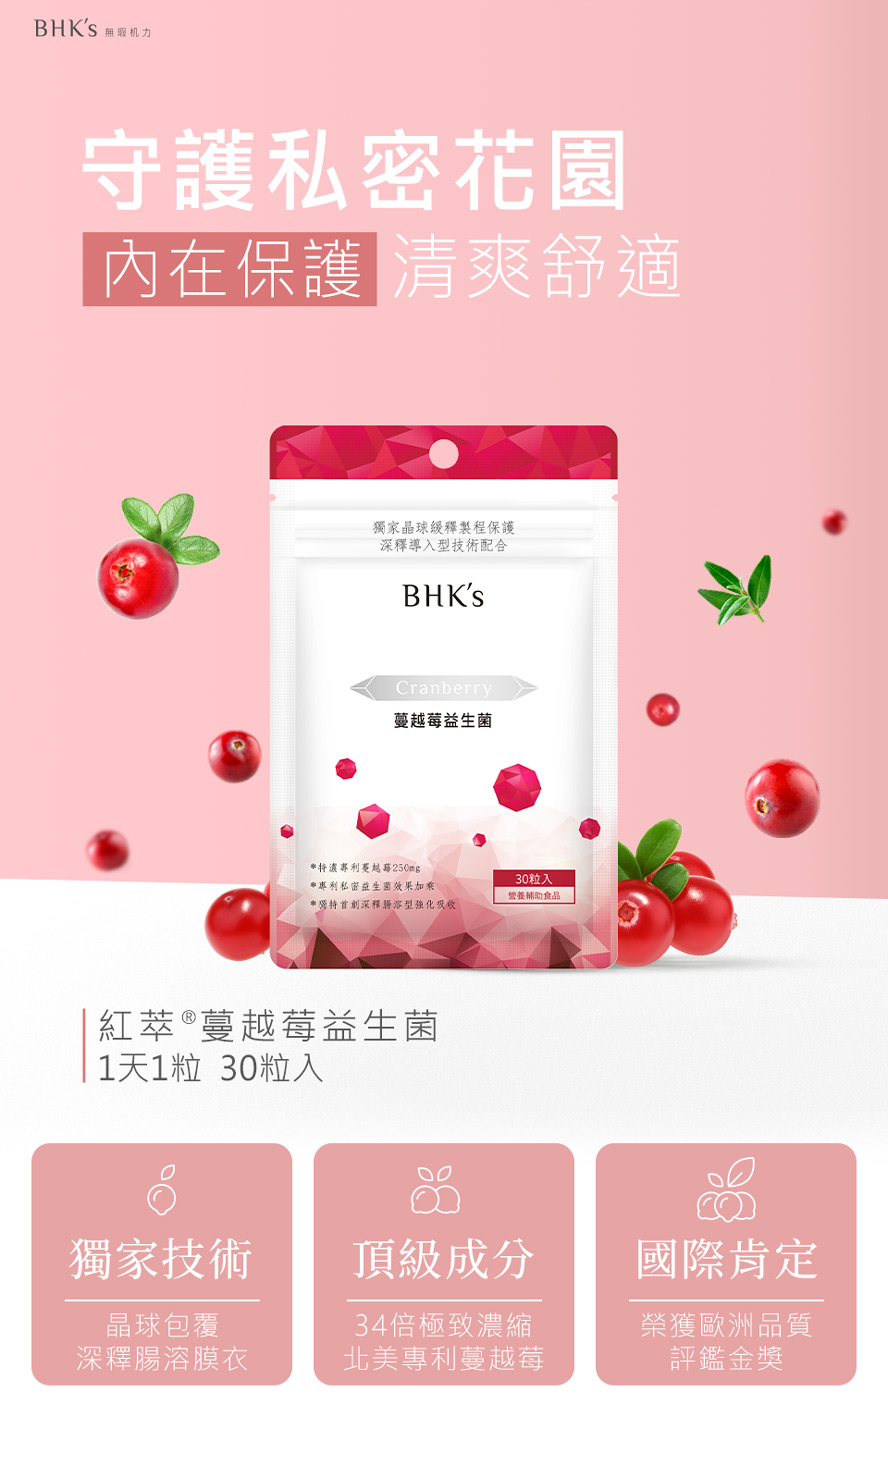 BHK's紅萃蔓越莓益生菌錠介紹。